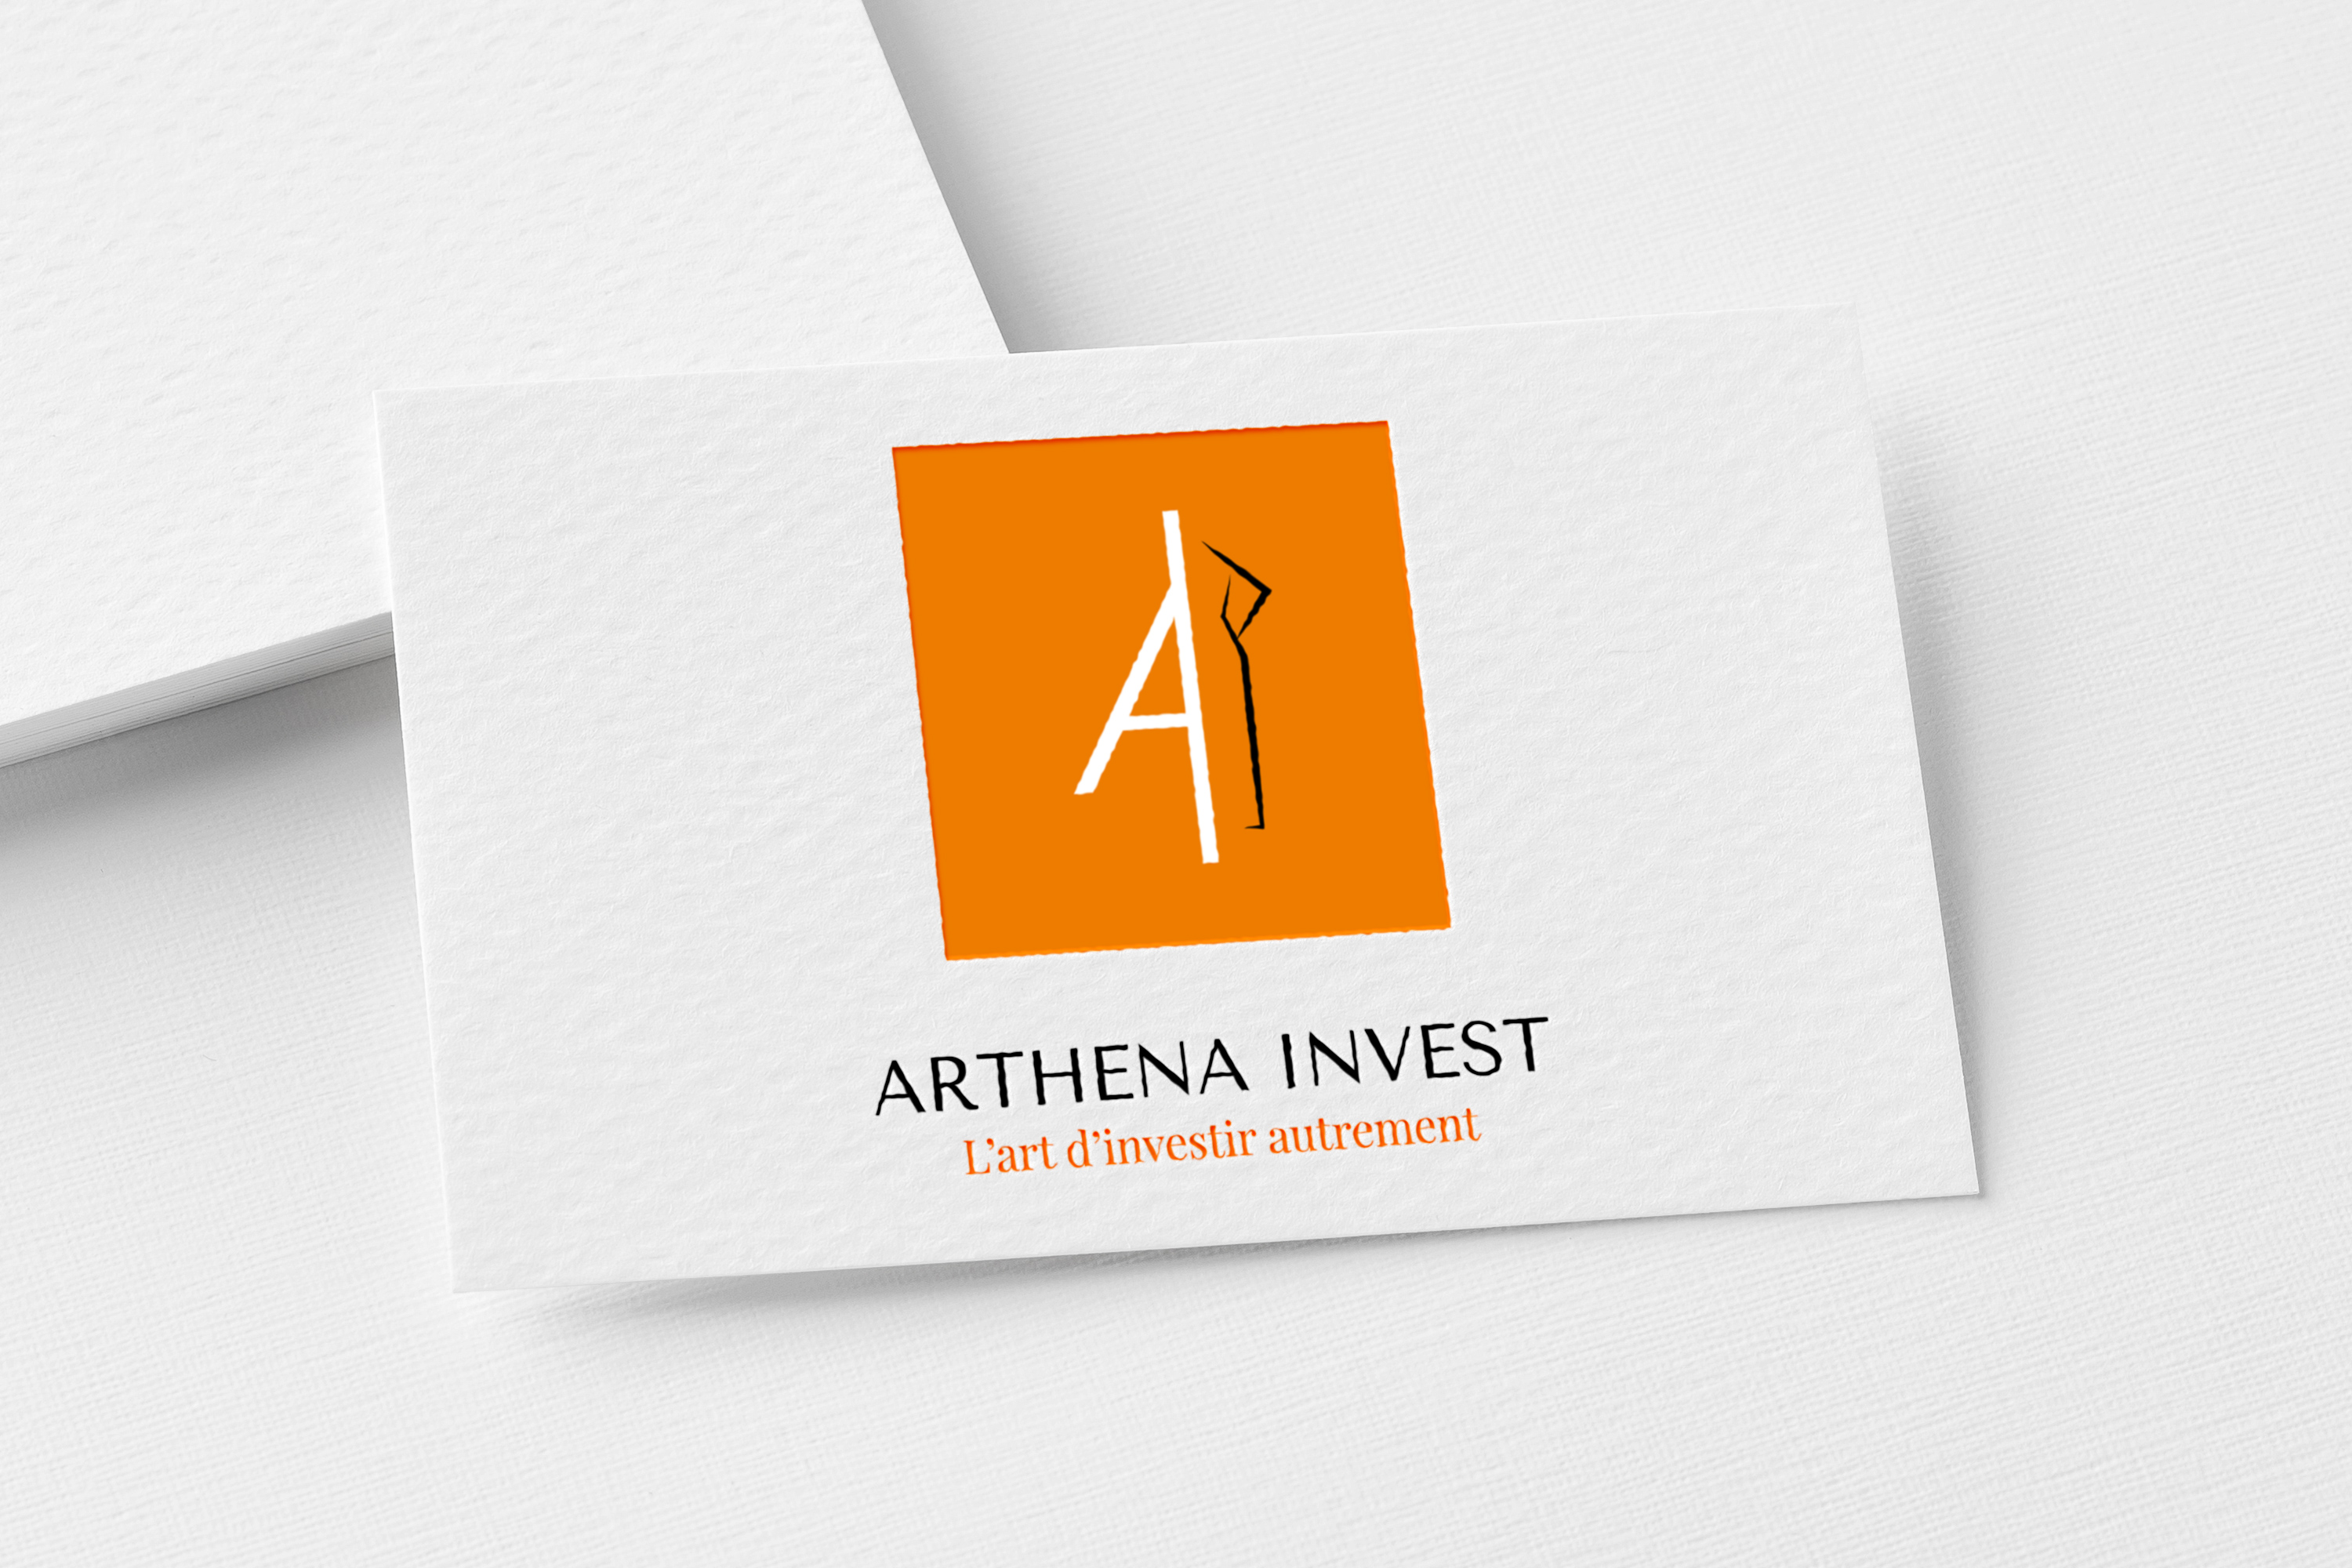 Conception du logo et de l’identité visuelle Arthena Invest